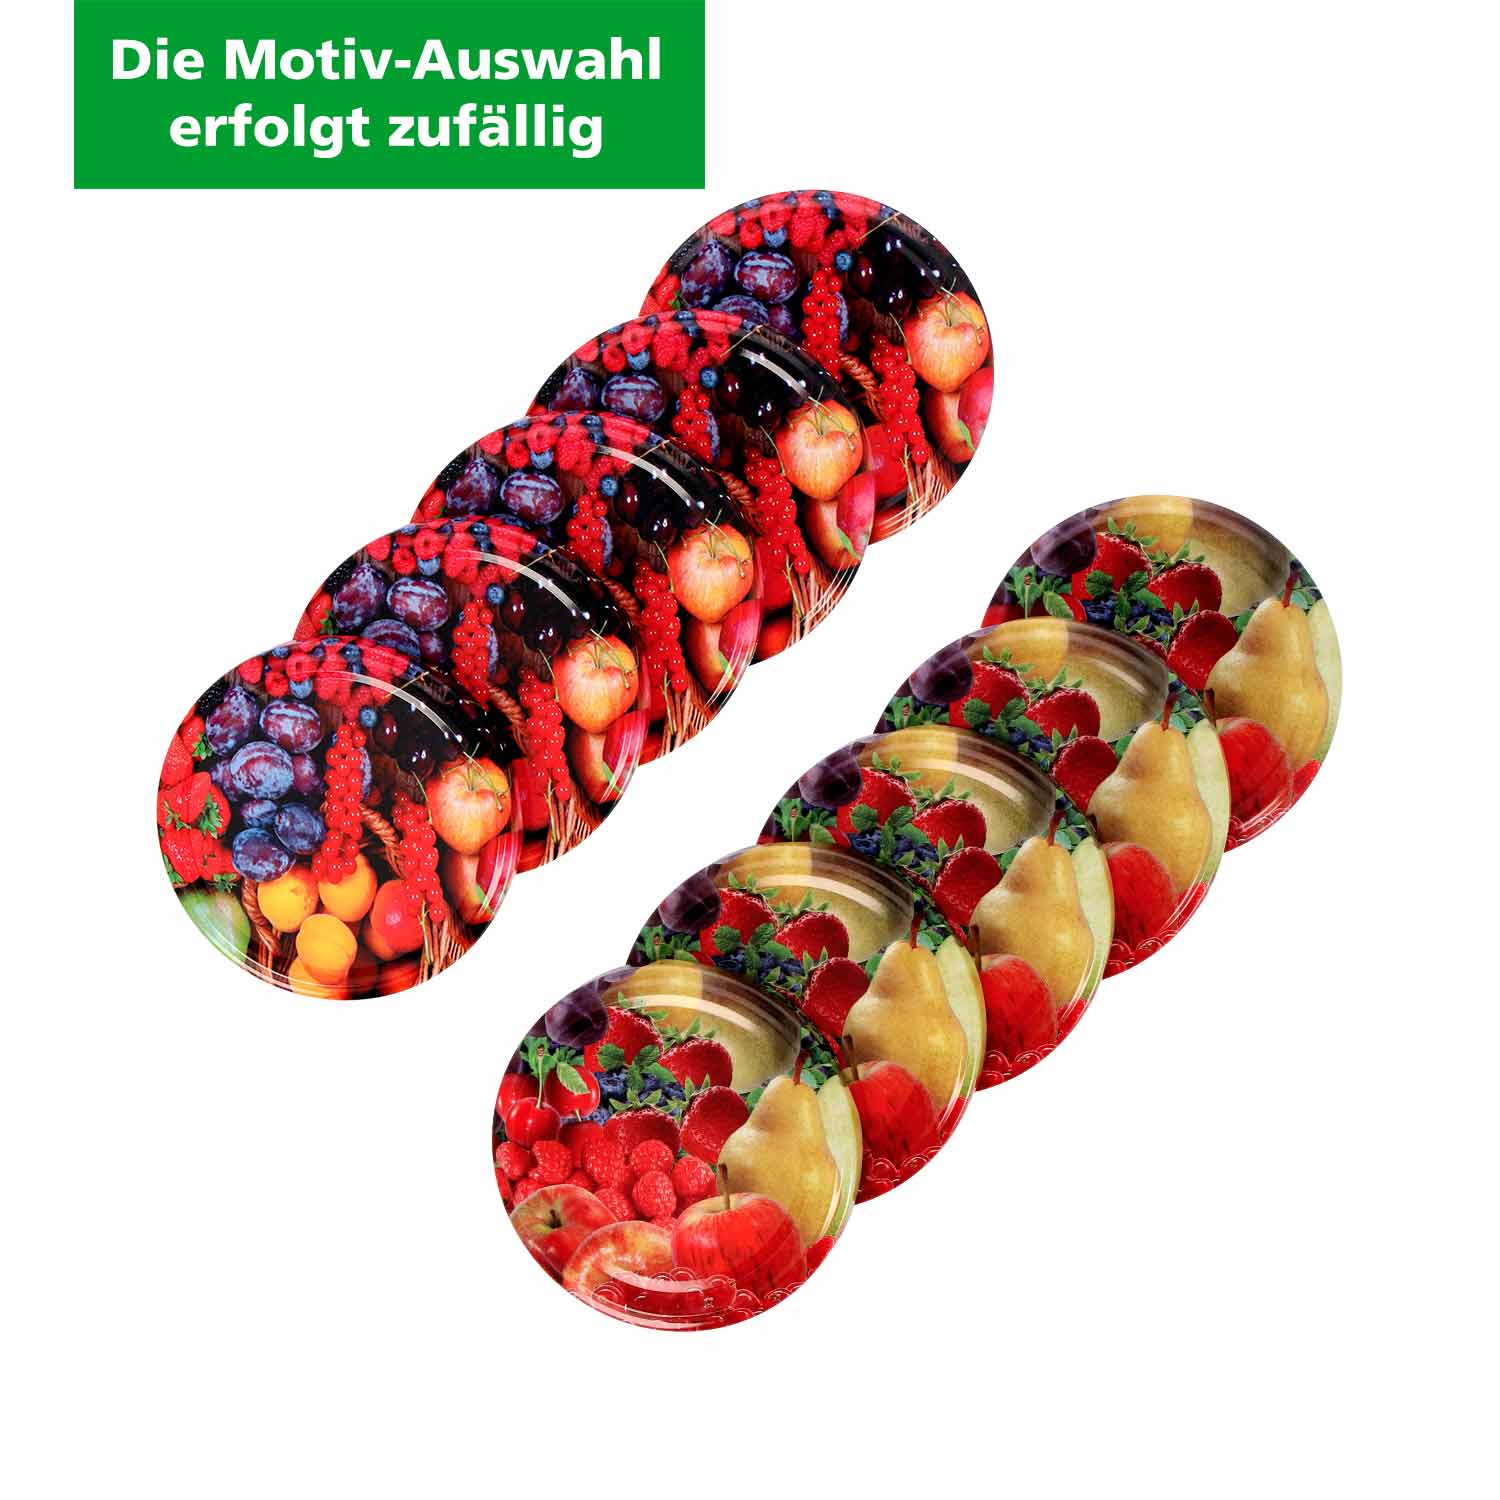 Schraubdeckel für Einmachgläser, 82 mm Früchte-Design (Motivauswahl erfolgt zufällig)